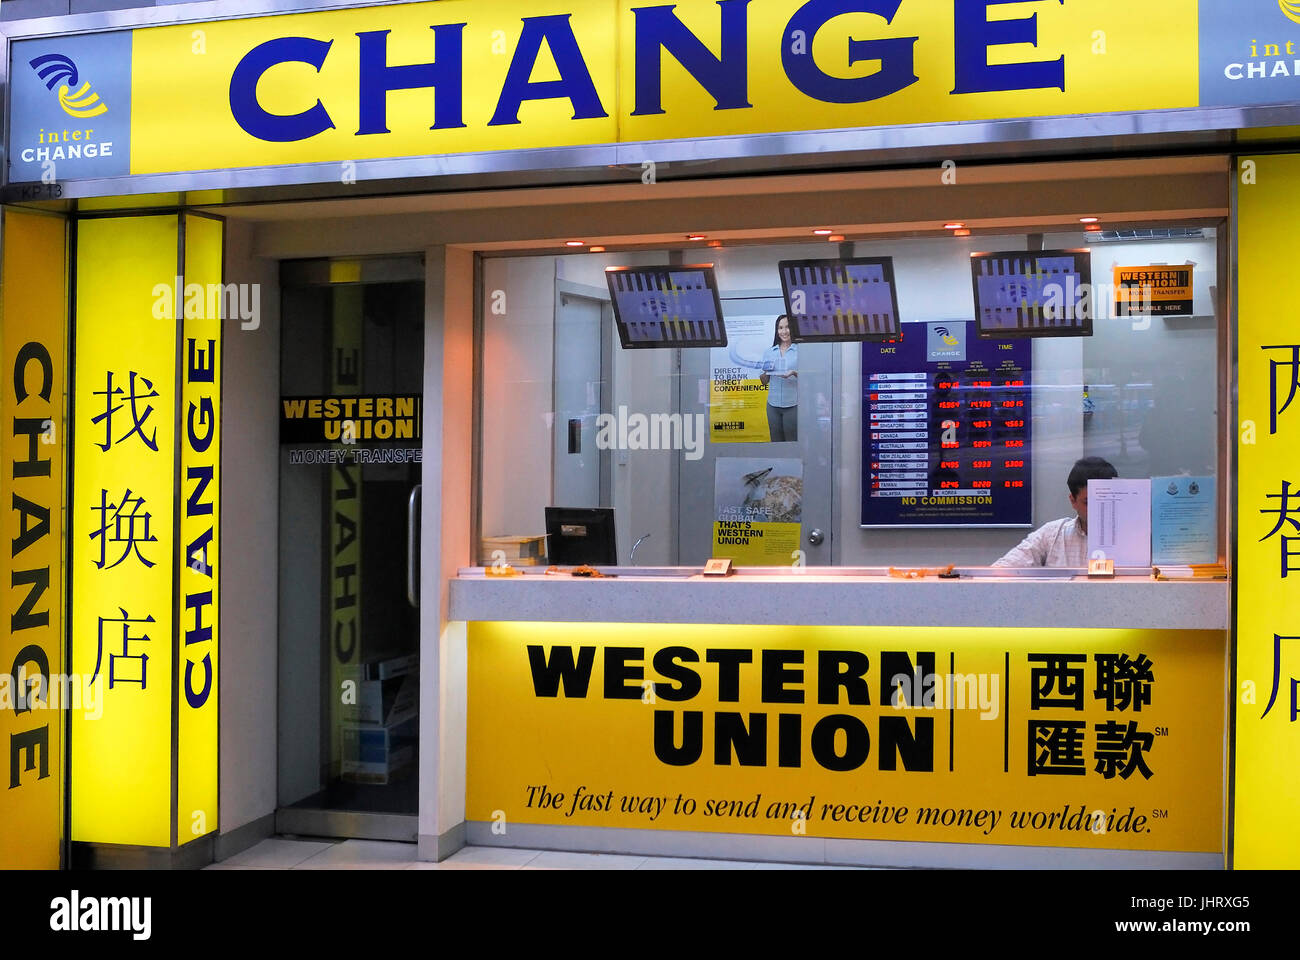 Western union change Banque de photographies et d'images à haute résolution  - Alamy